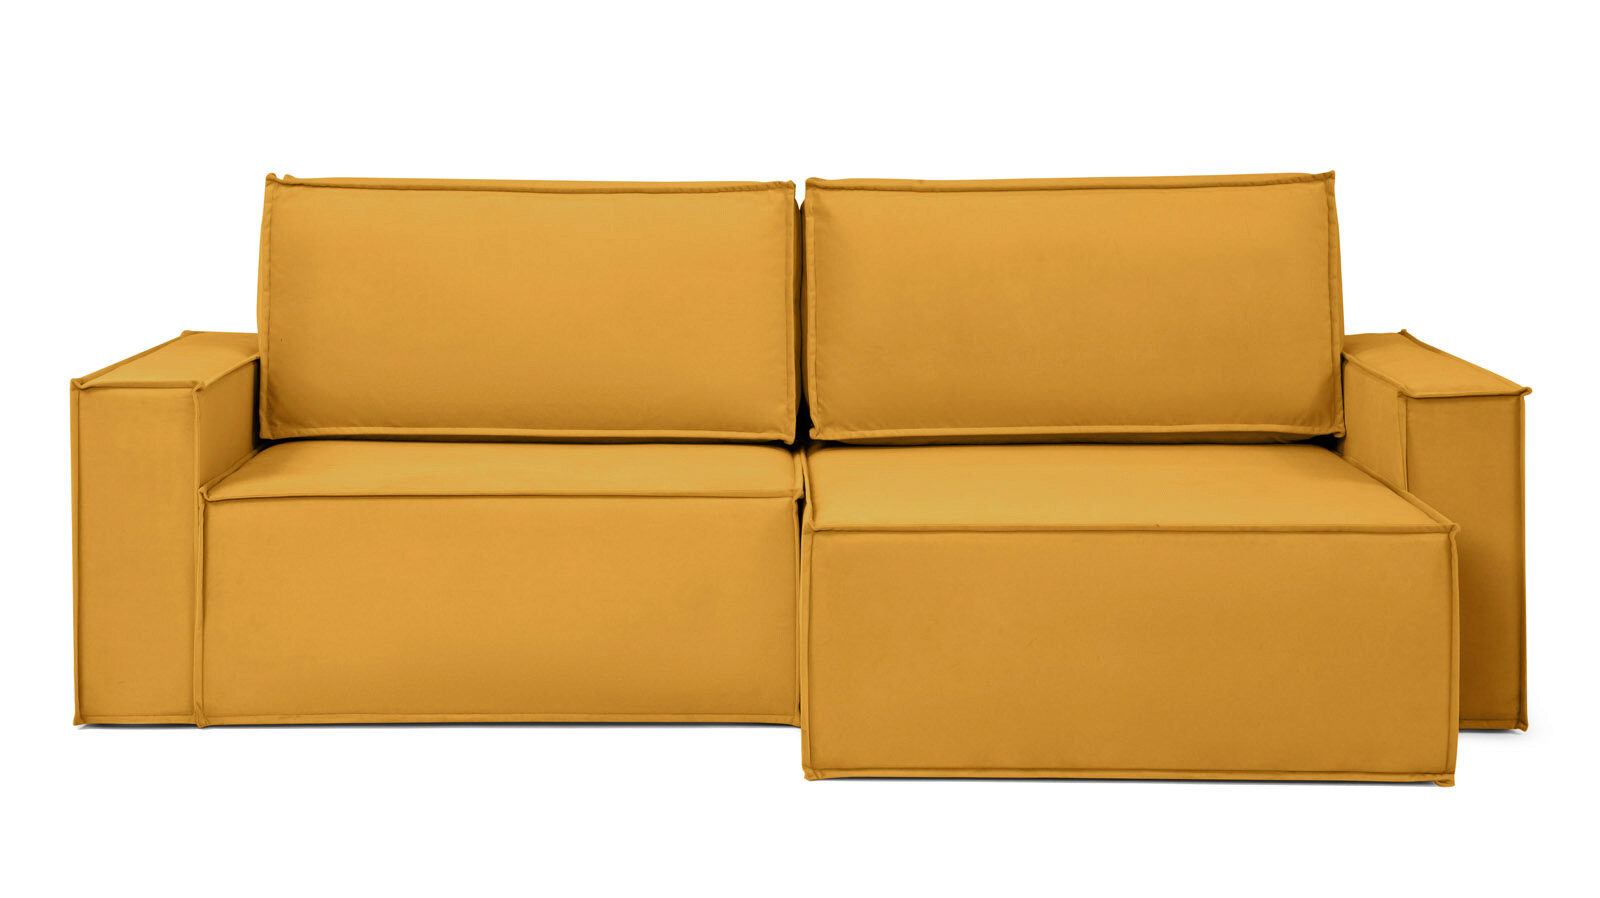 Угловой диван Klark 2 секционный с широкими подлокотниками